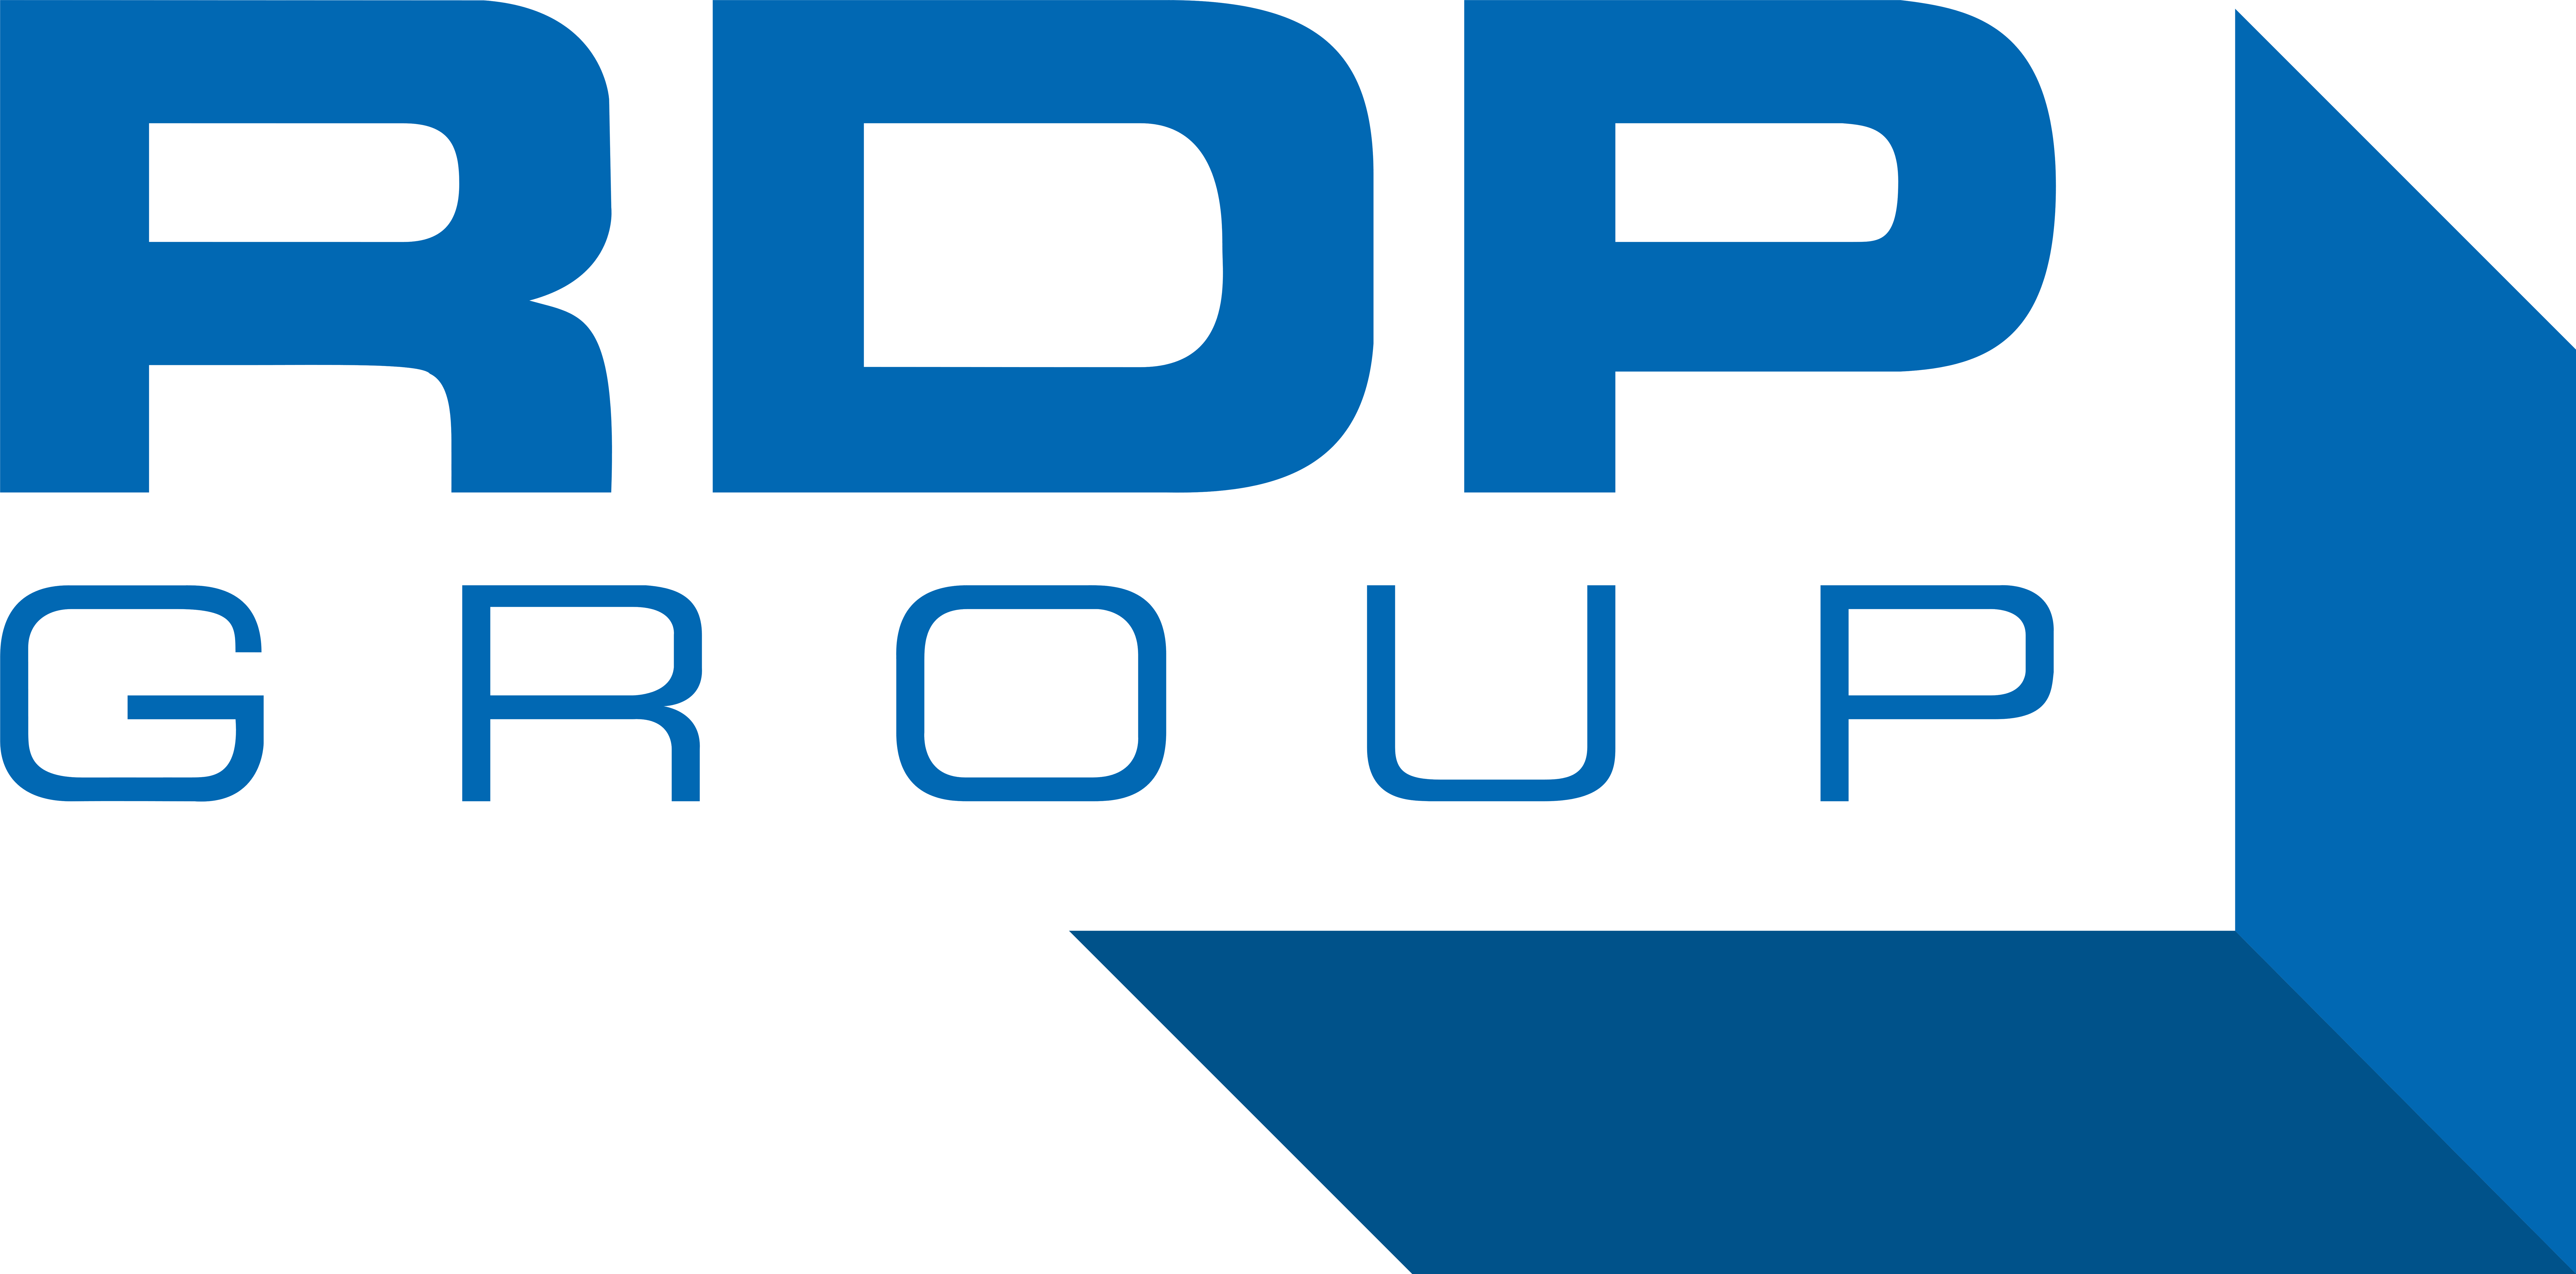 RDP Electronics Ltd